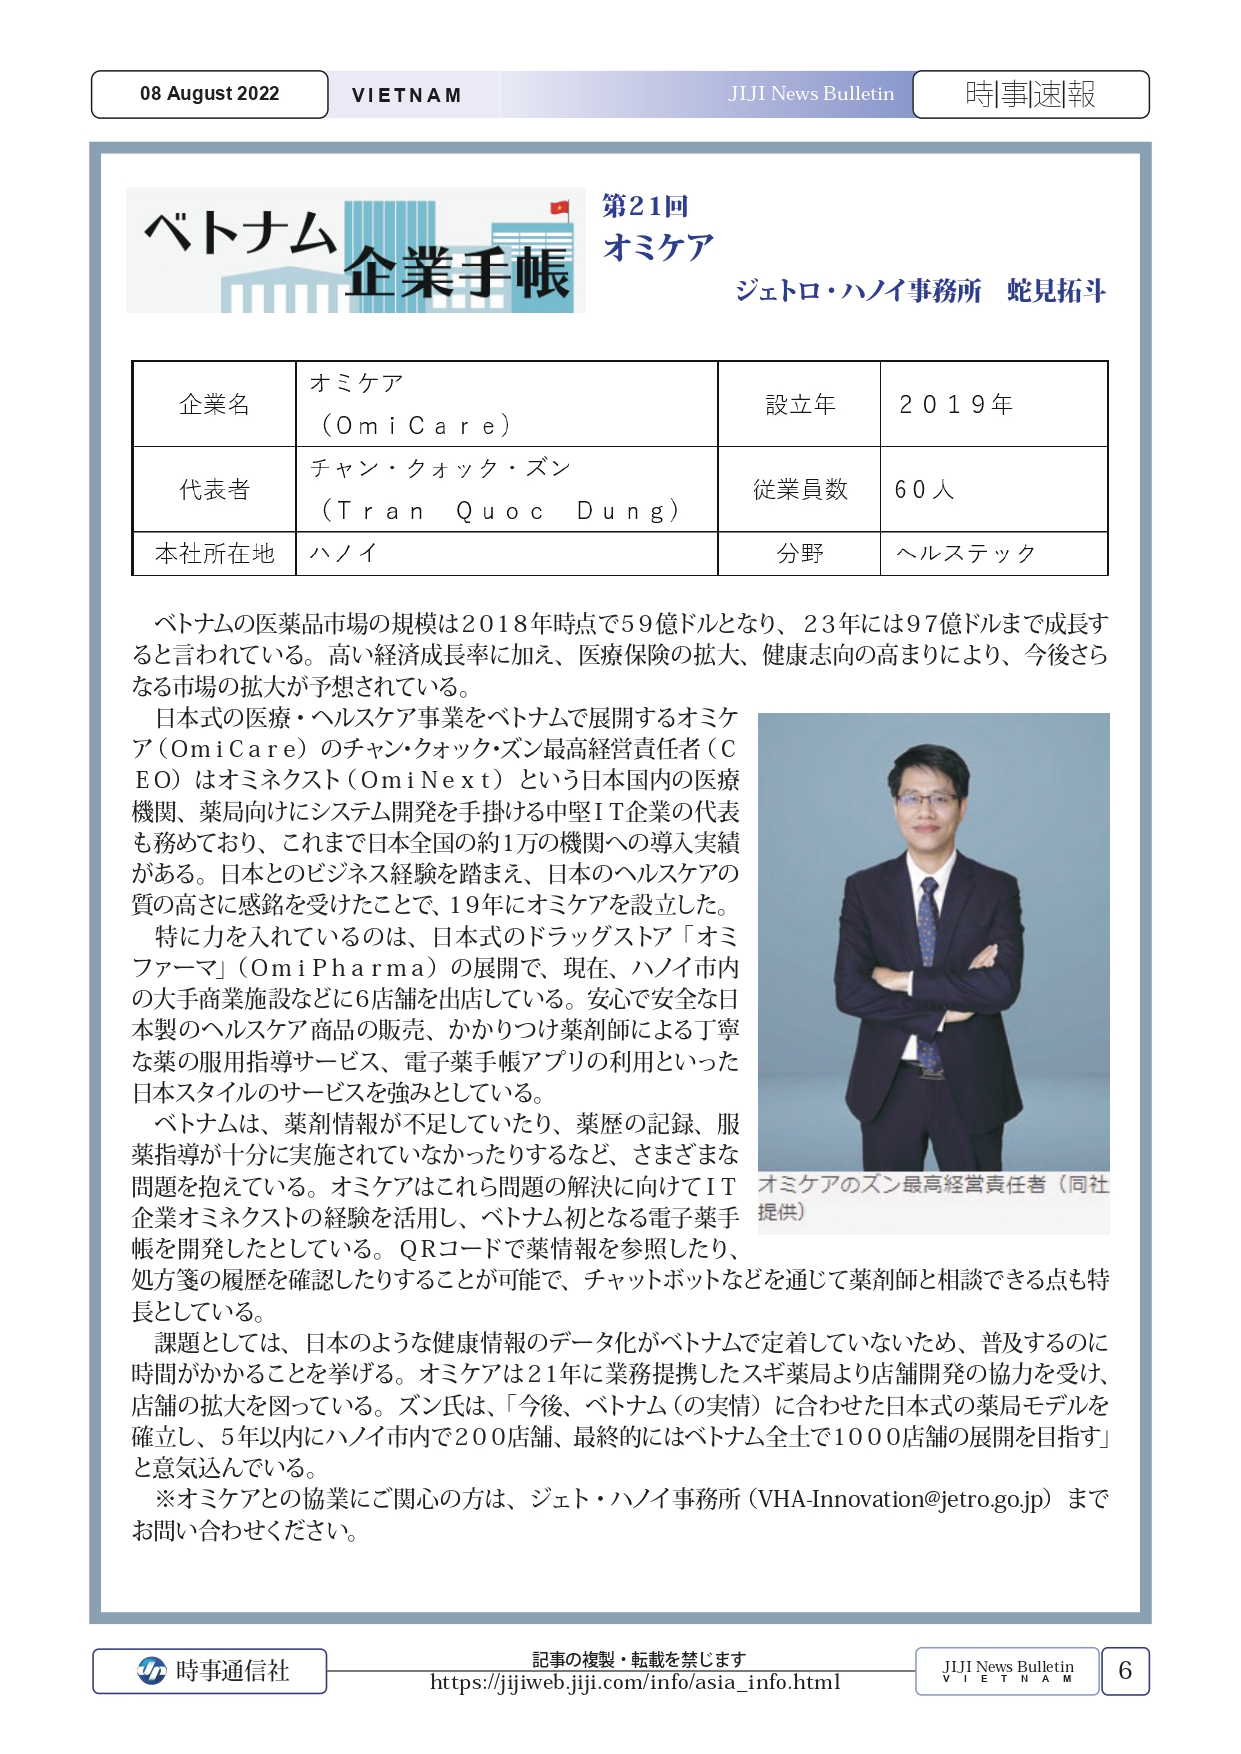 CEO OMICARE OMI PHARMA TRẦN QUỐC DŨNG TRẢ LỜI PHỎNG VẤN JIJI PRESS (hãng Thông tấn lớn của Nhật Bản)